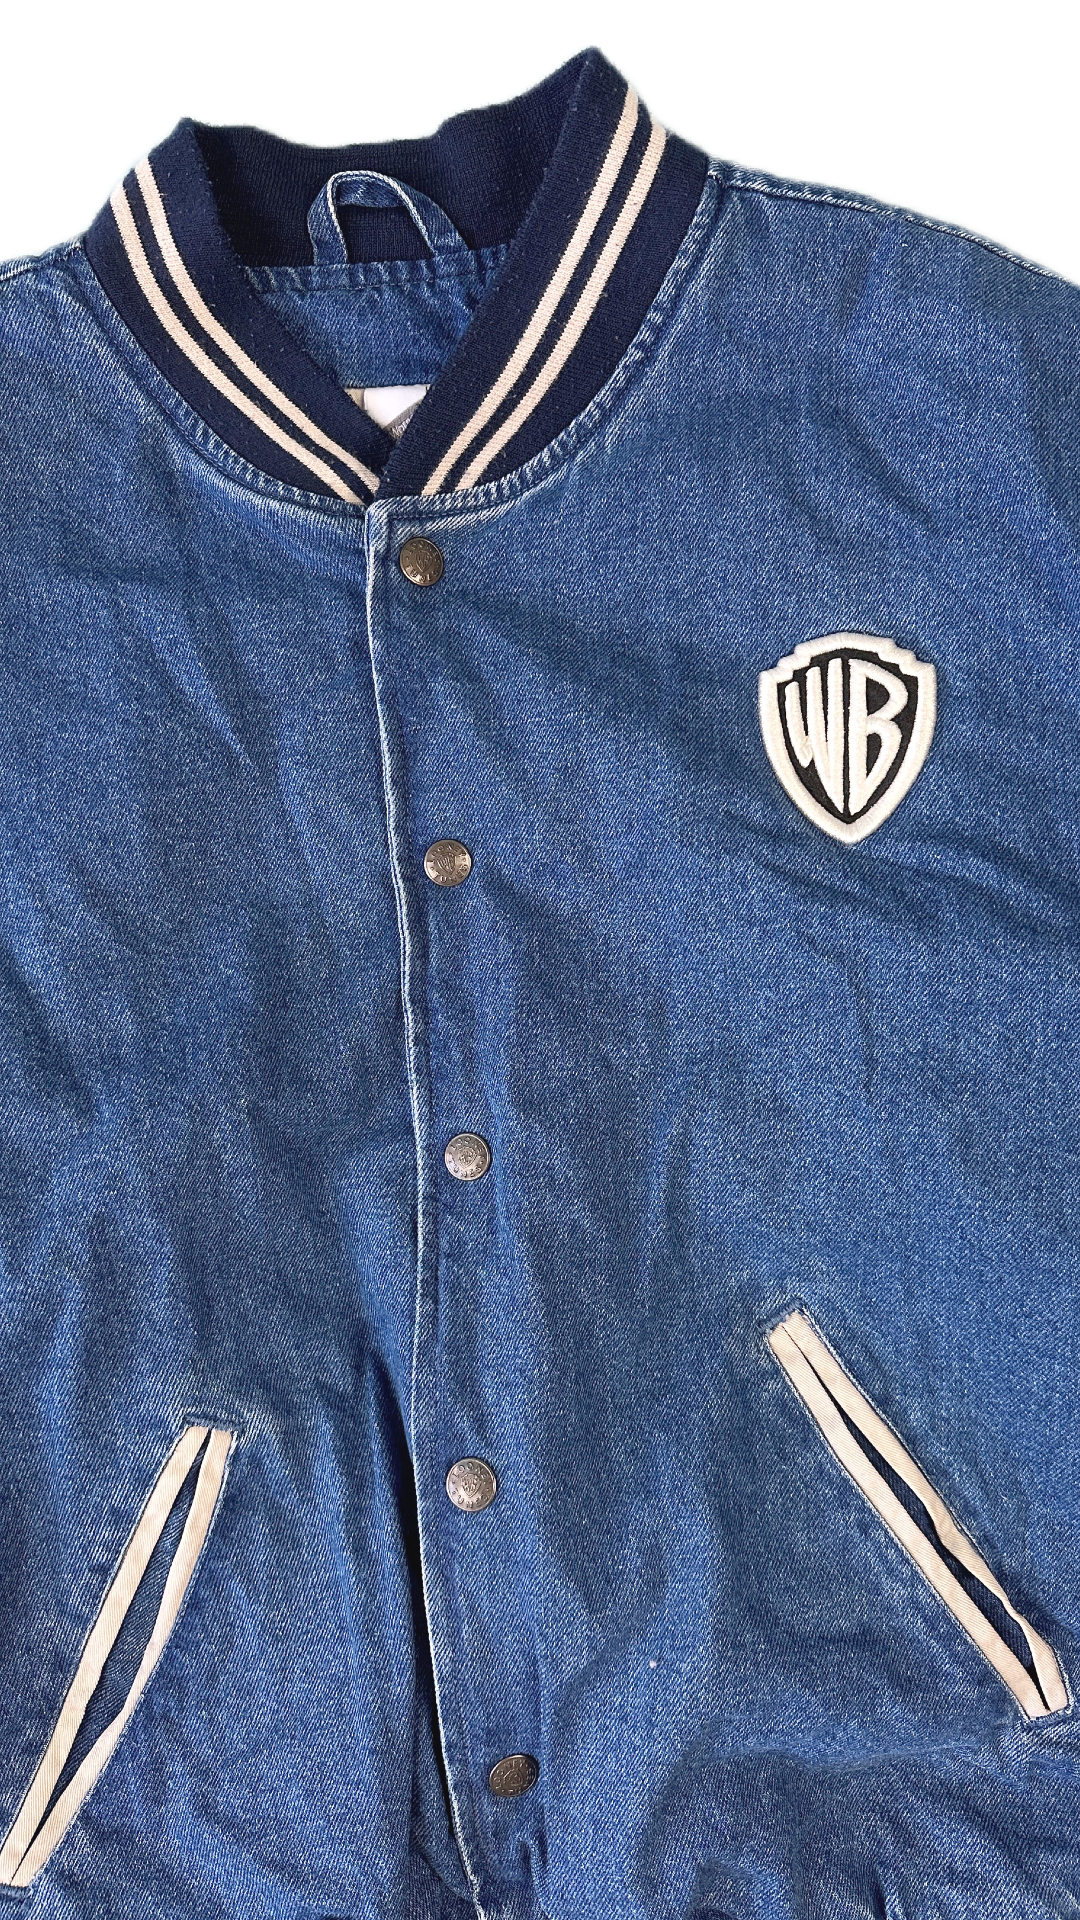 Warner Bros Vintage Denim Bomber Jacket - L